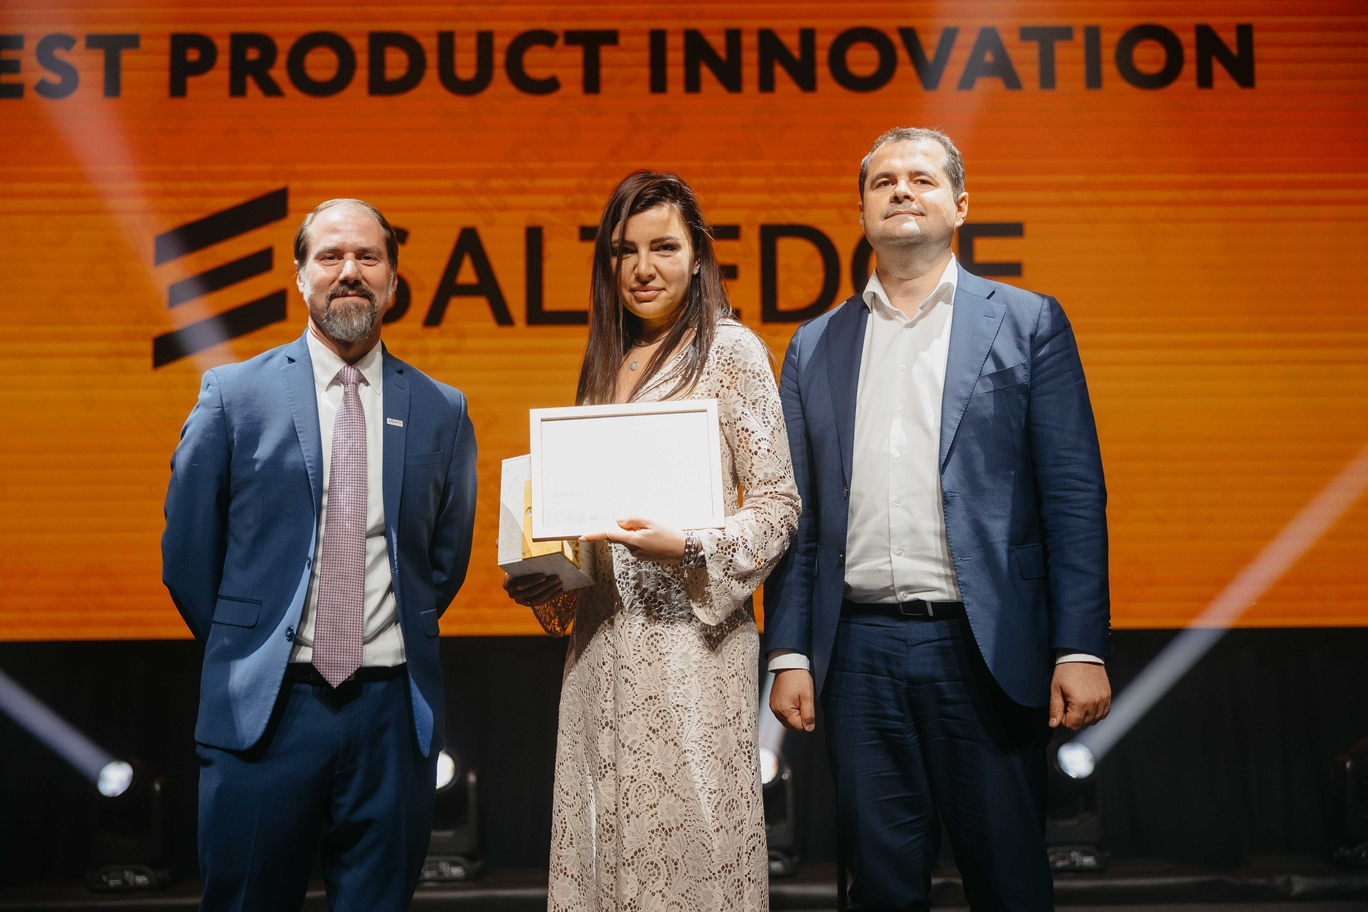 Antreprenorii din domeniile tech și creativ s-au ales cu premii și recunoaștere internațională. Iată cine sunt câștigătorii Moldova Innovation Awards